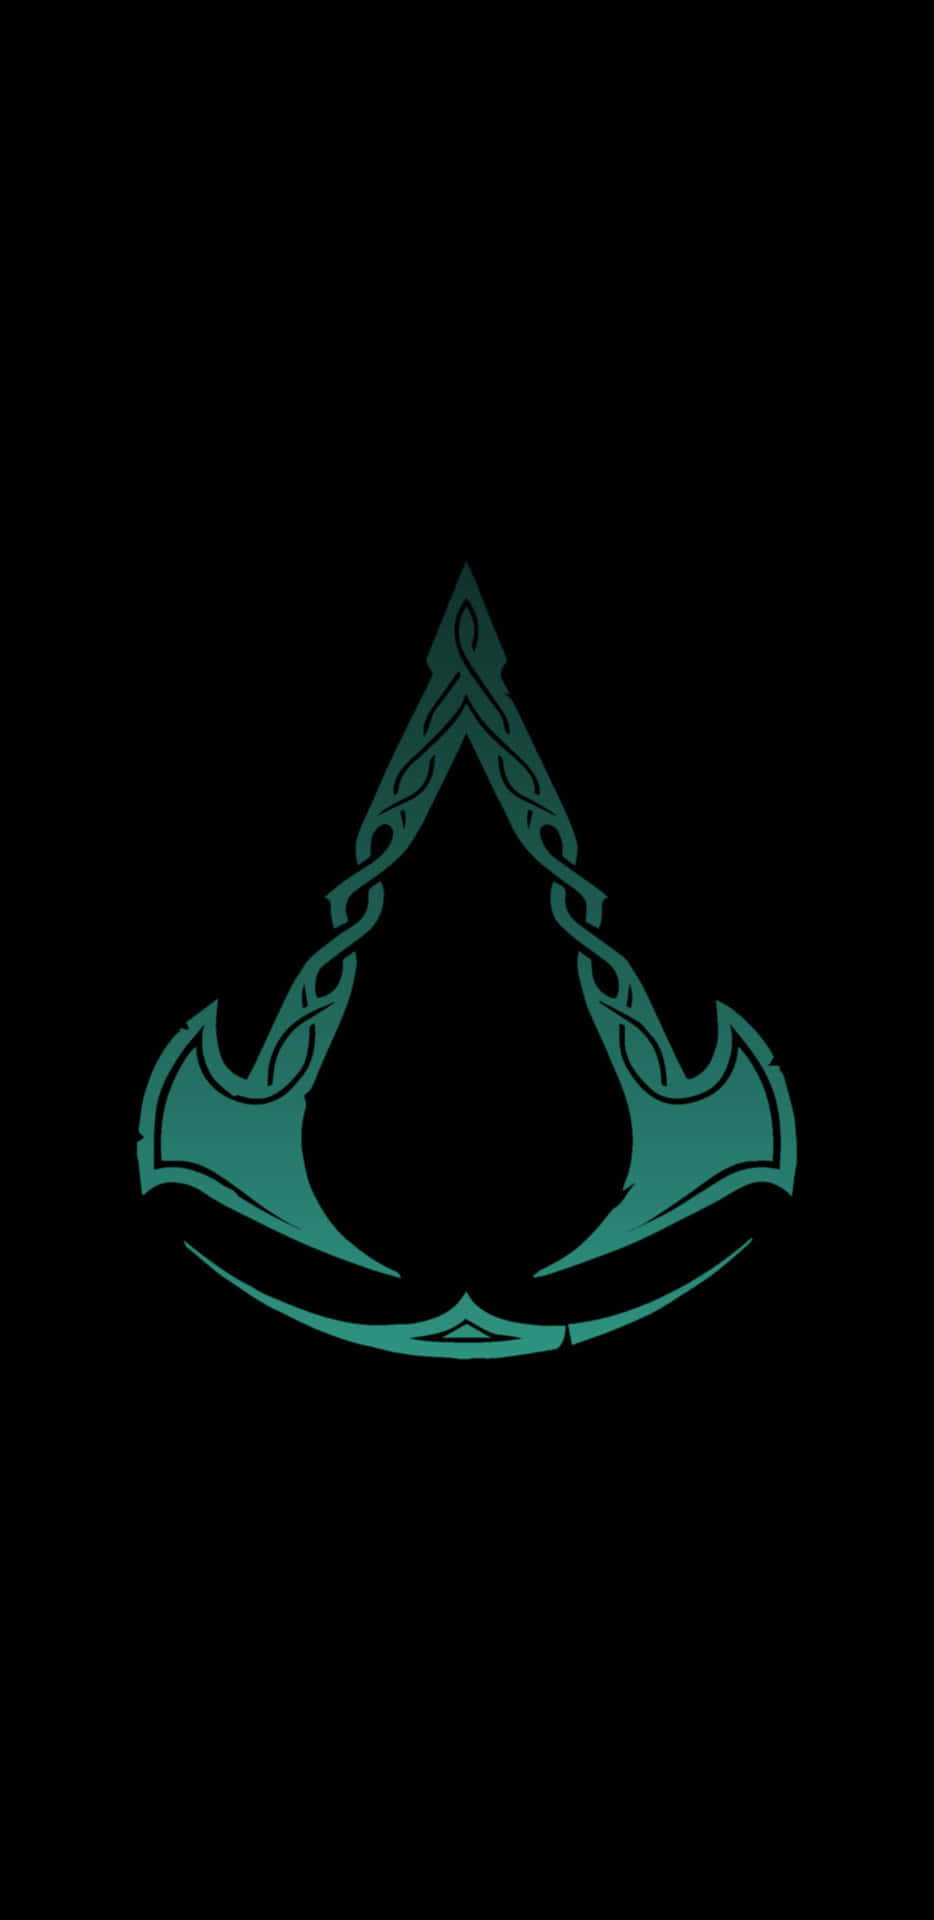 Assassin's Creed Iii Logo